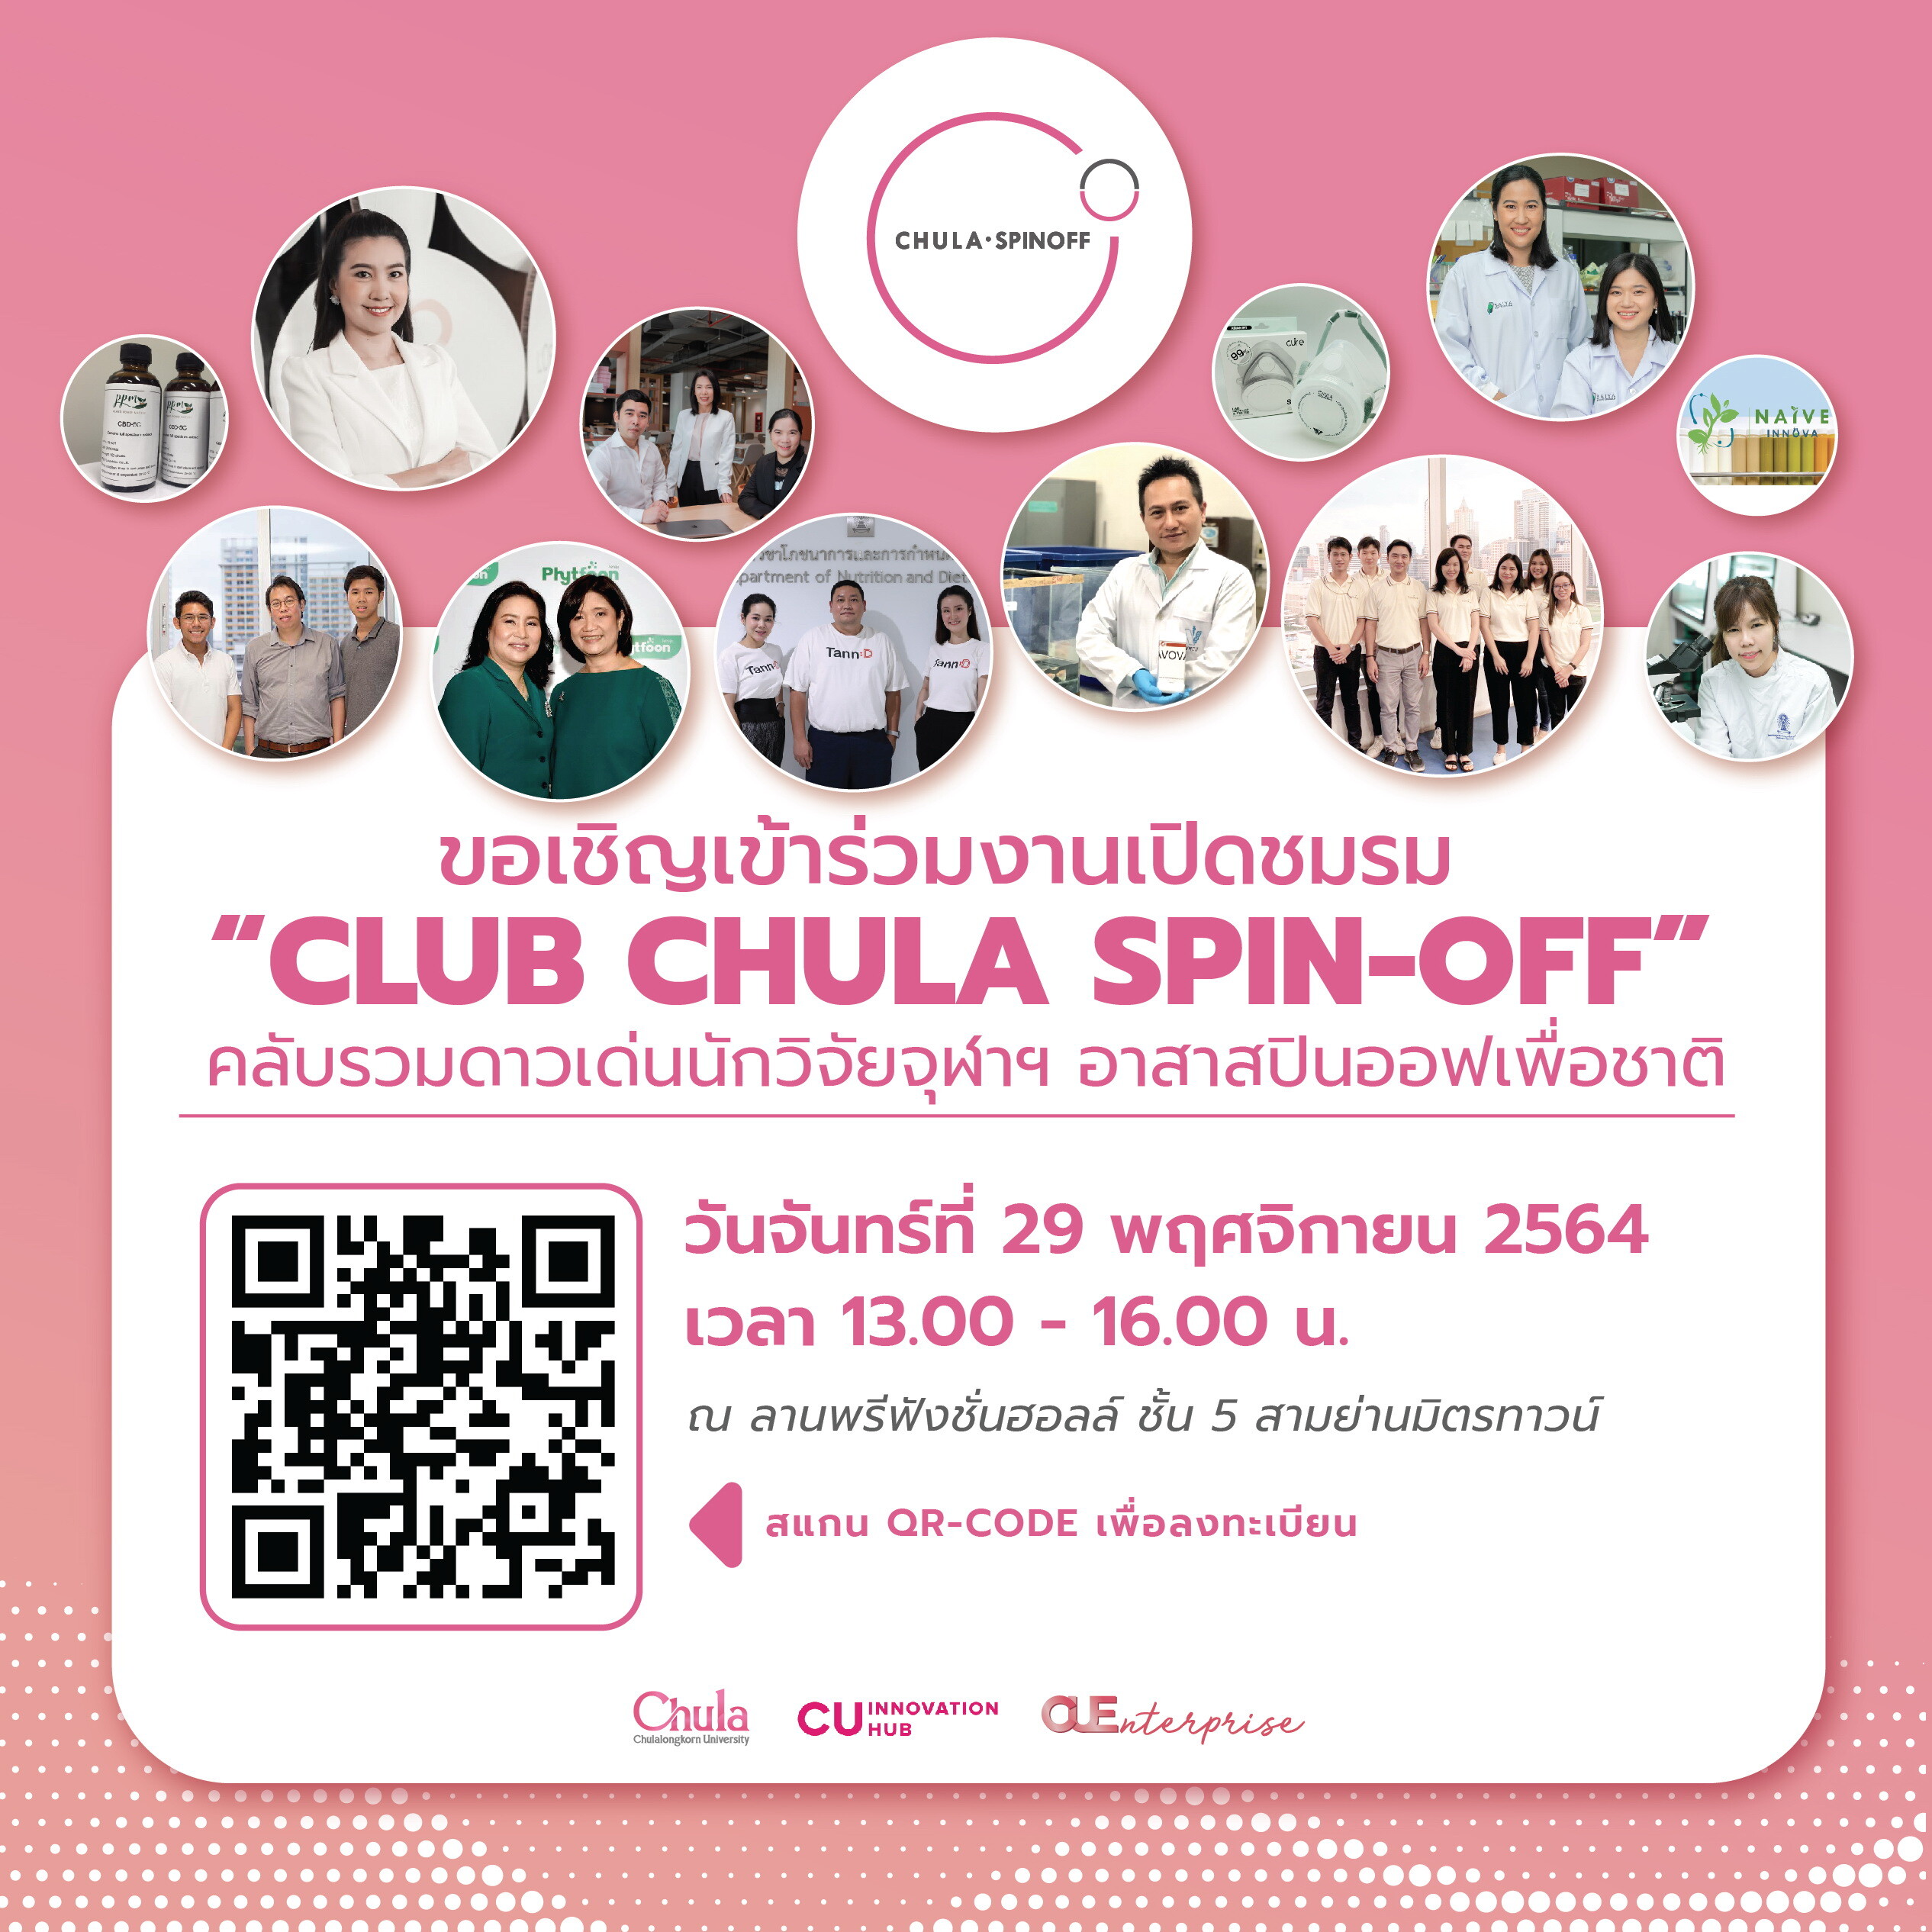 จุฬาฯ จัดงานเปิด "Club Chula Spin-off"